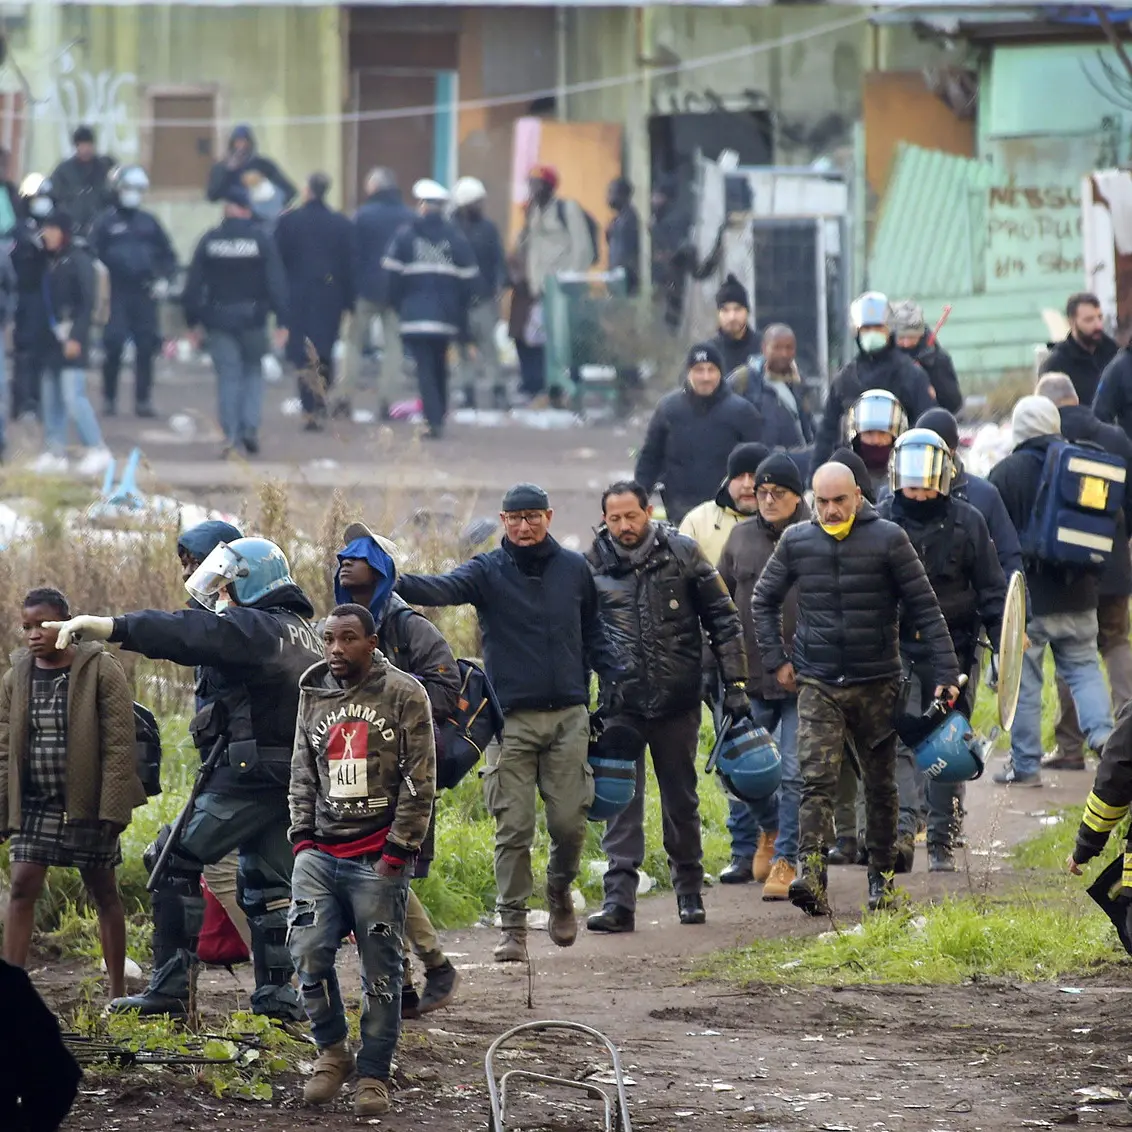 Cgil: Musumeci incapace, scarica le responsabilità sui migranti